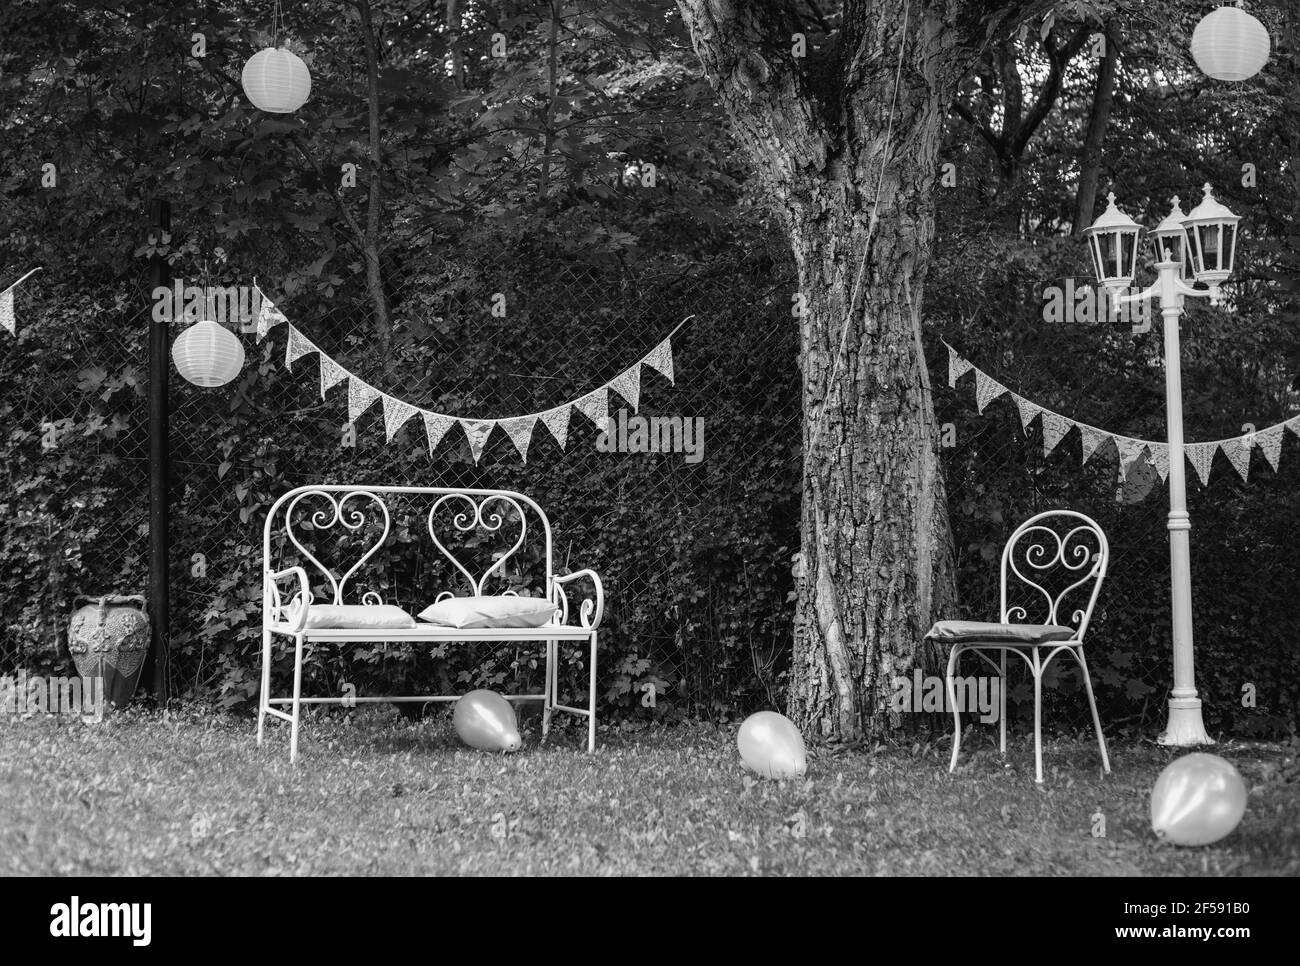 Immagine in scala di grigi di un cortile con decorazioni per una celebrazione evento Foto Stock